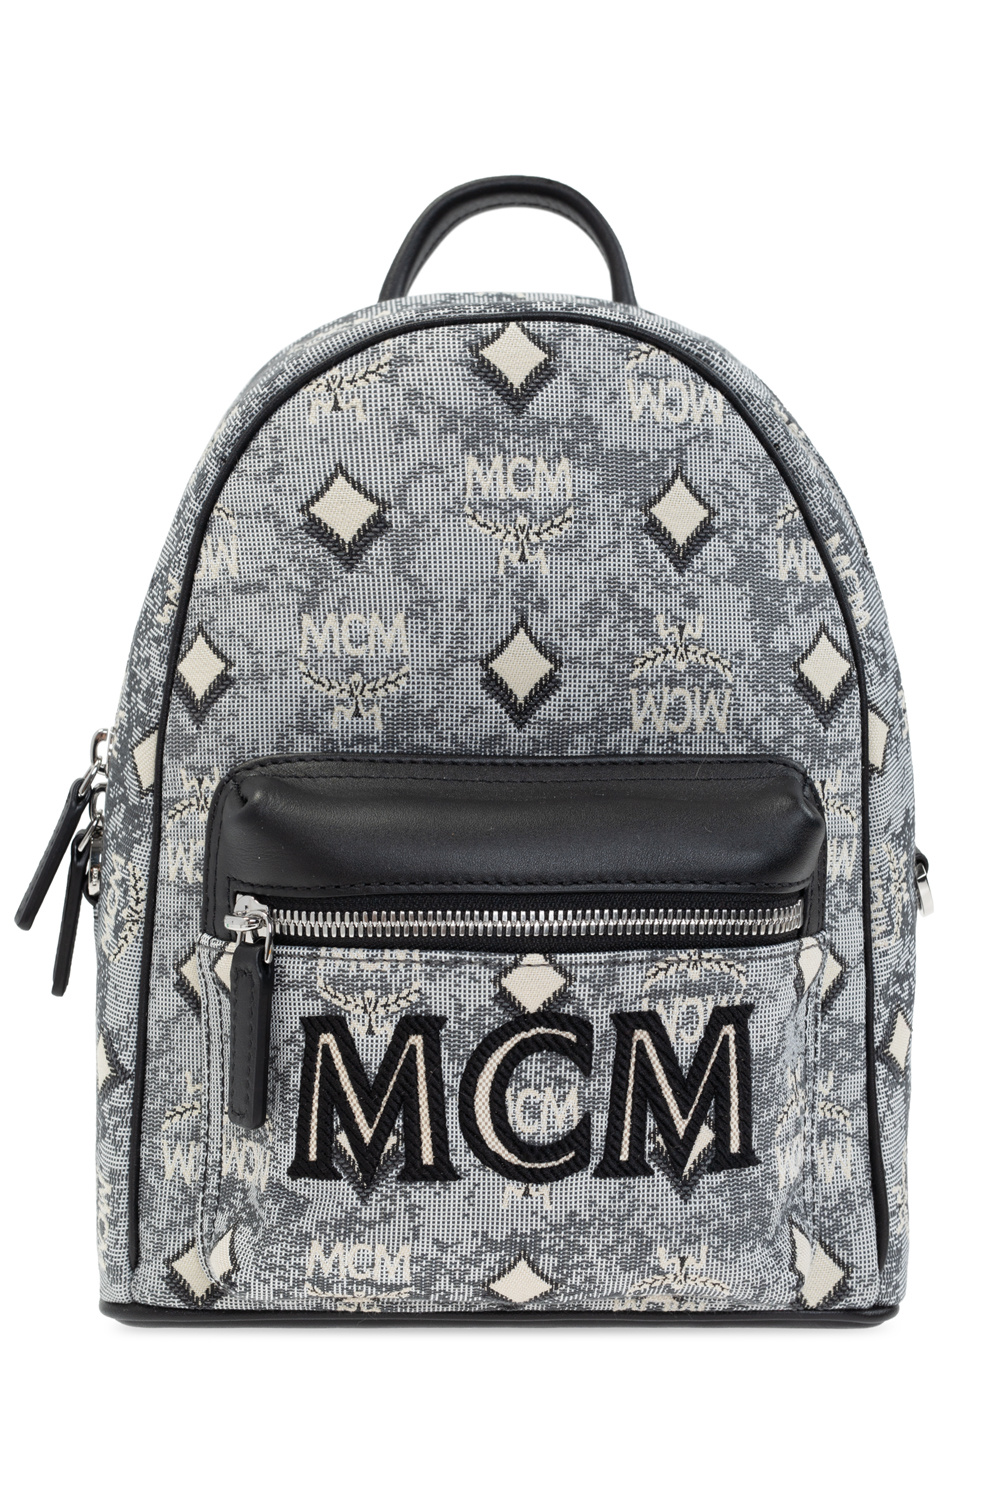 MCM Vintage Jacquard Monogram Shoulder Bag